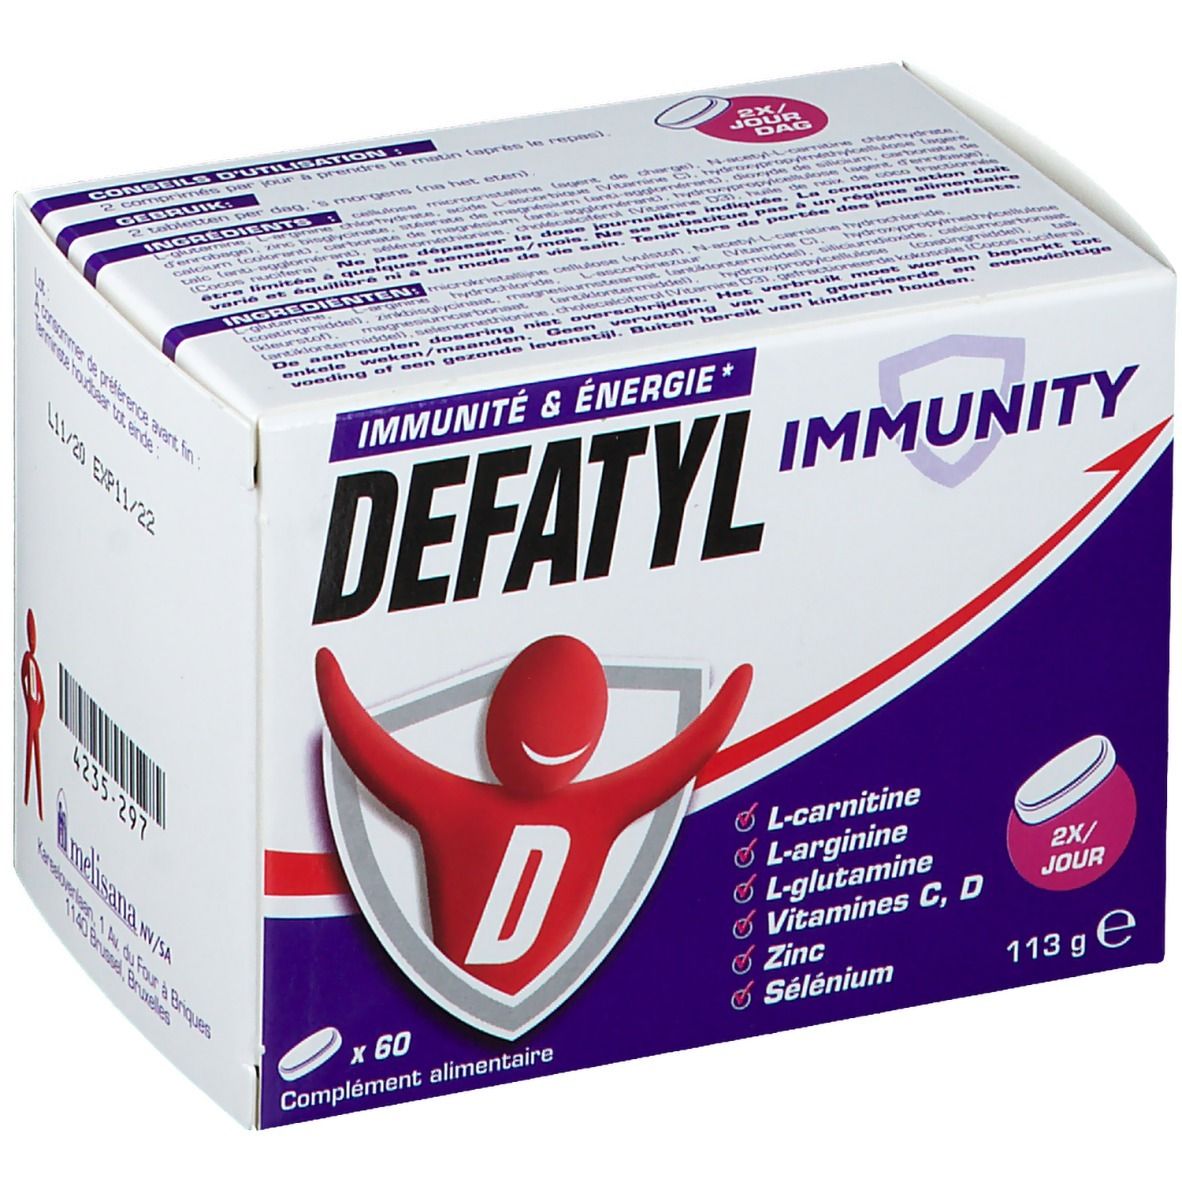 Defatyl Immunity